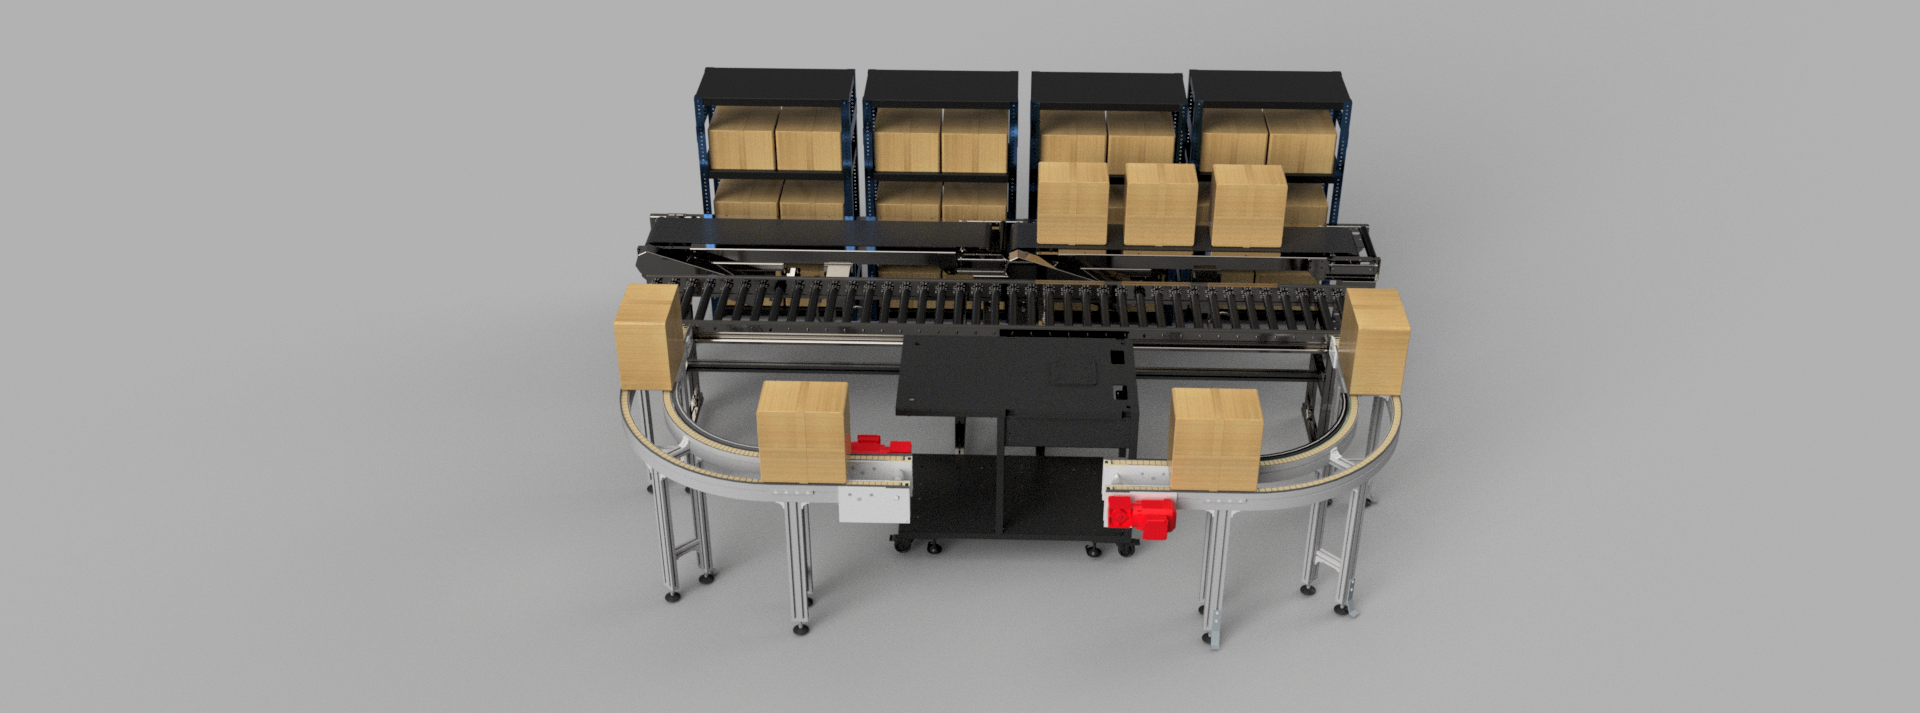 Conveyer盒子包装输送线